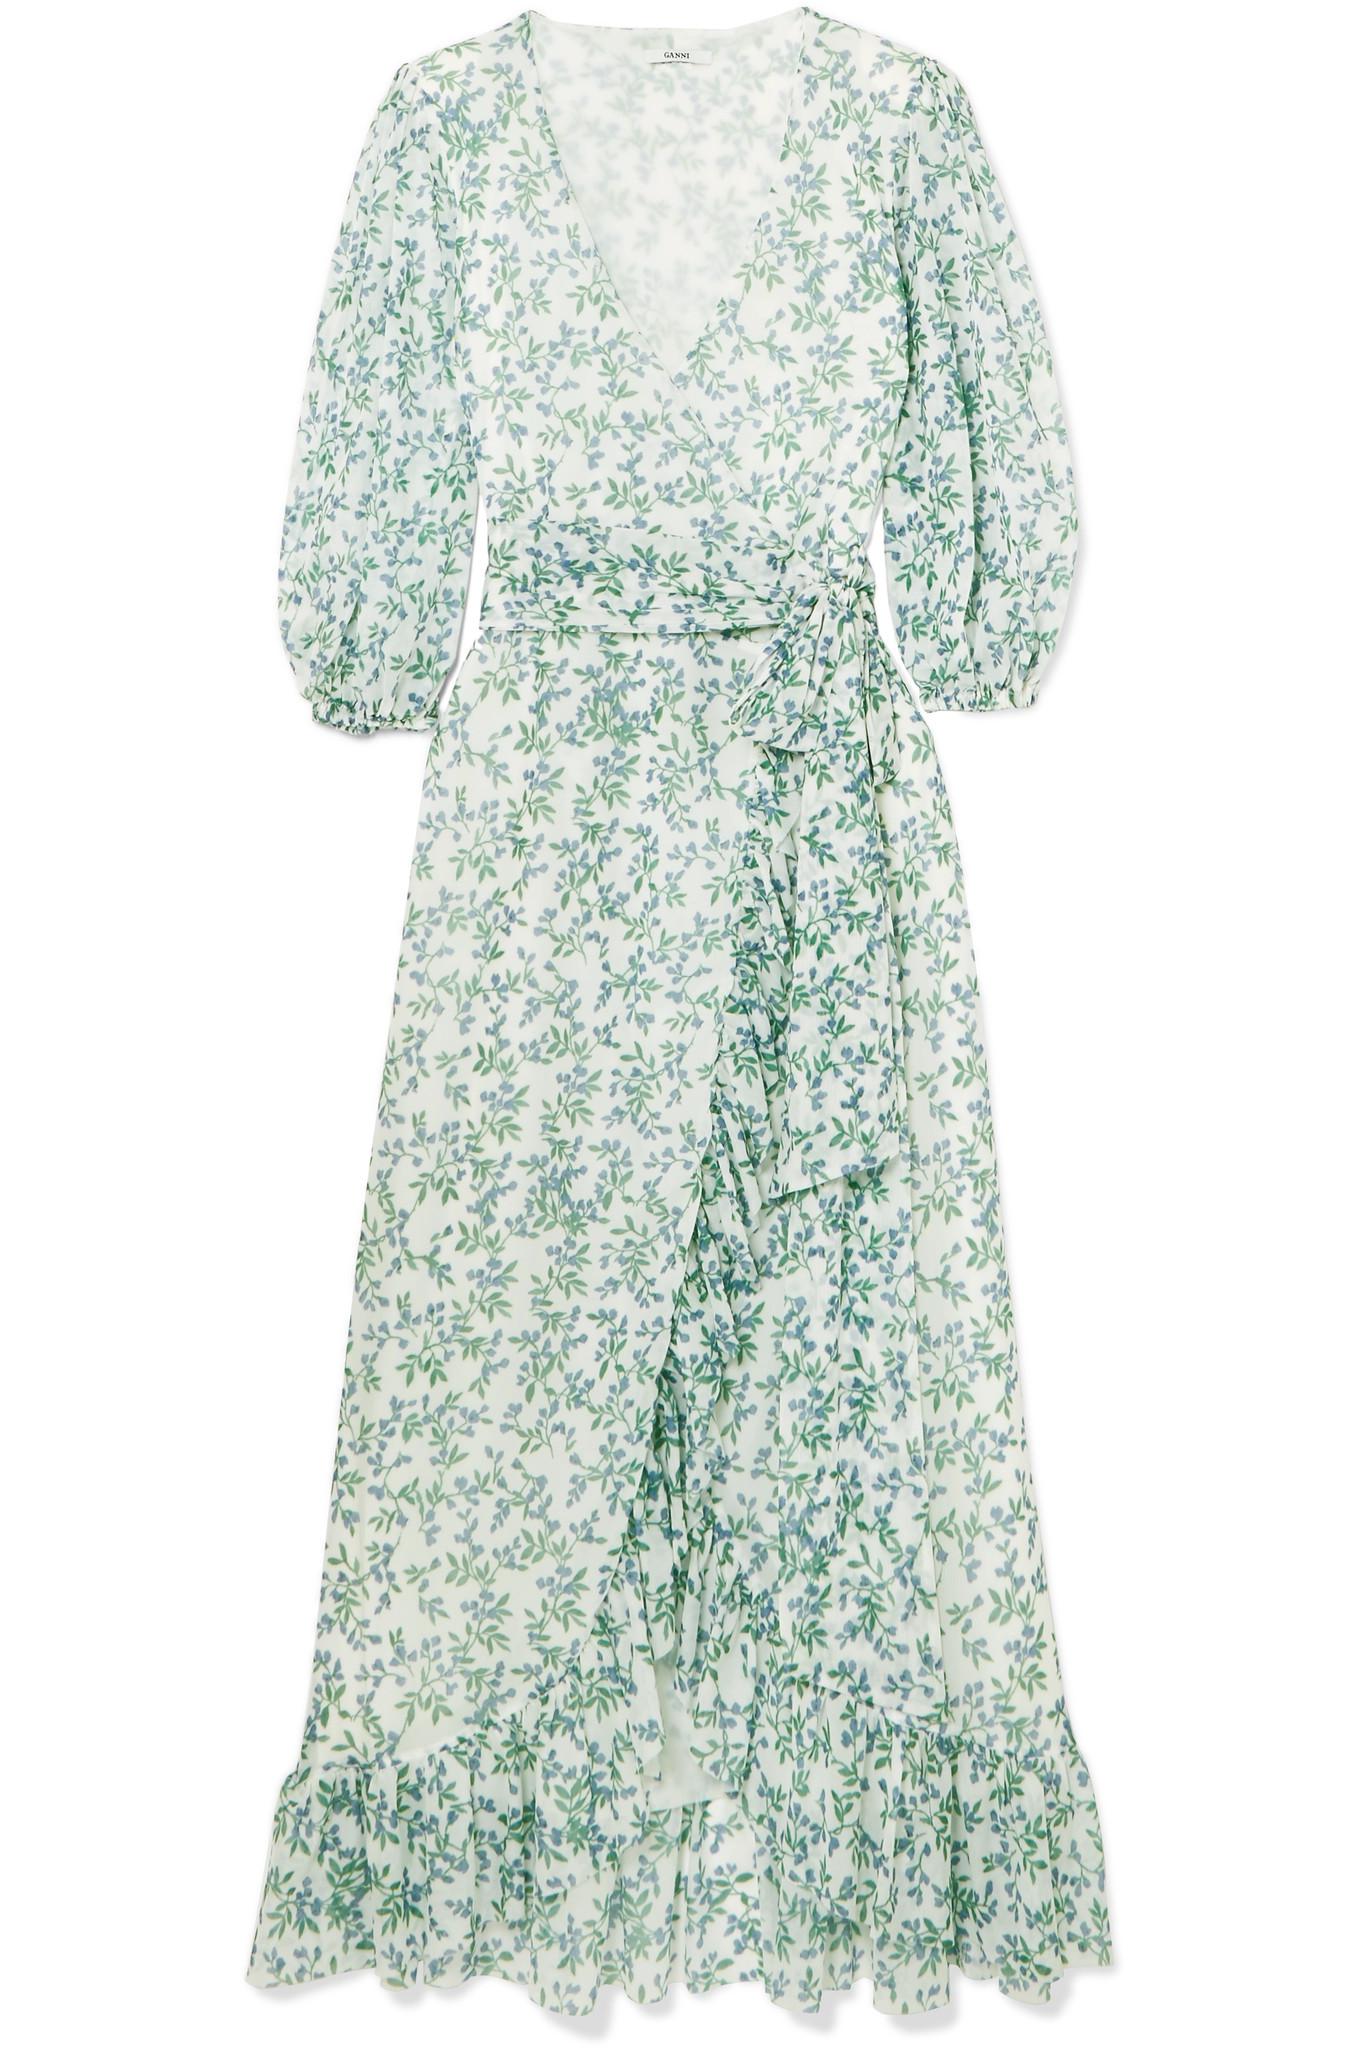 ganni green floral dress 2131f9